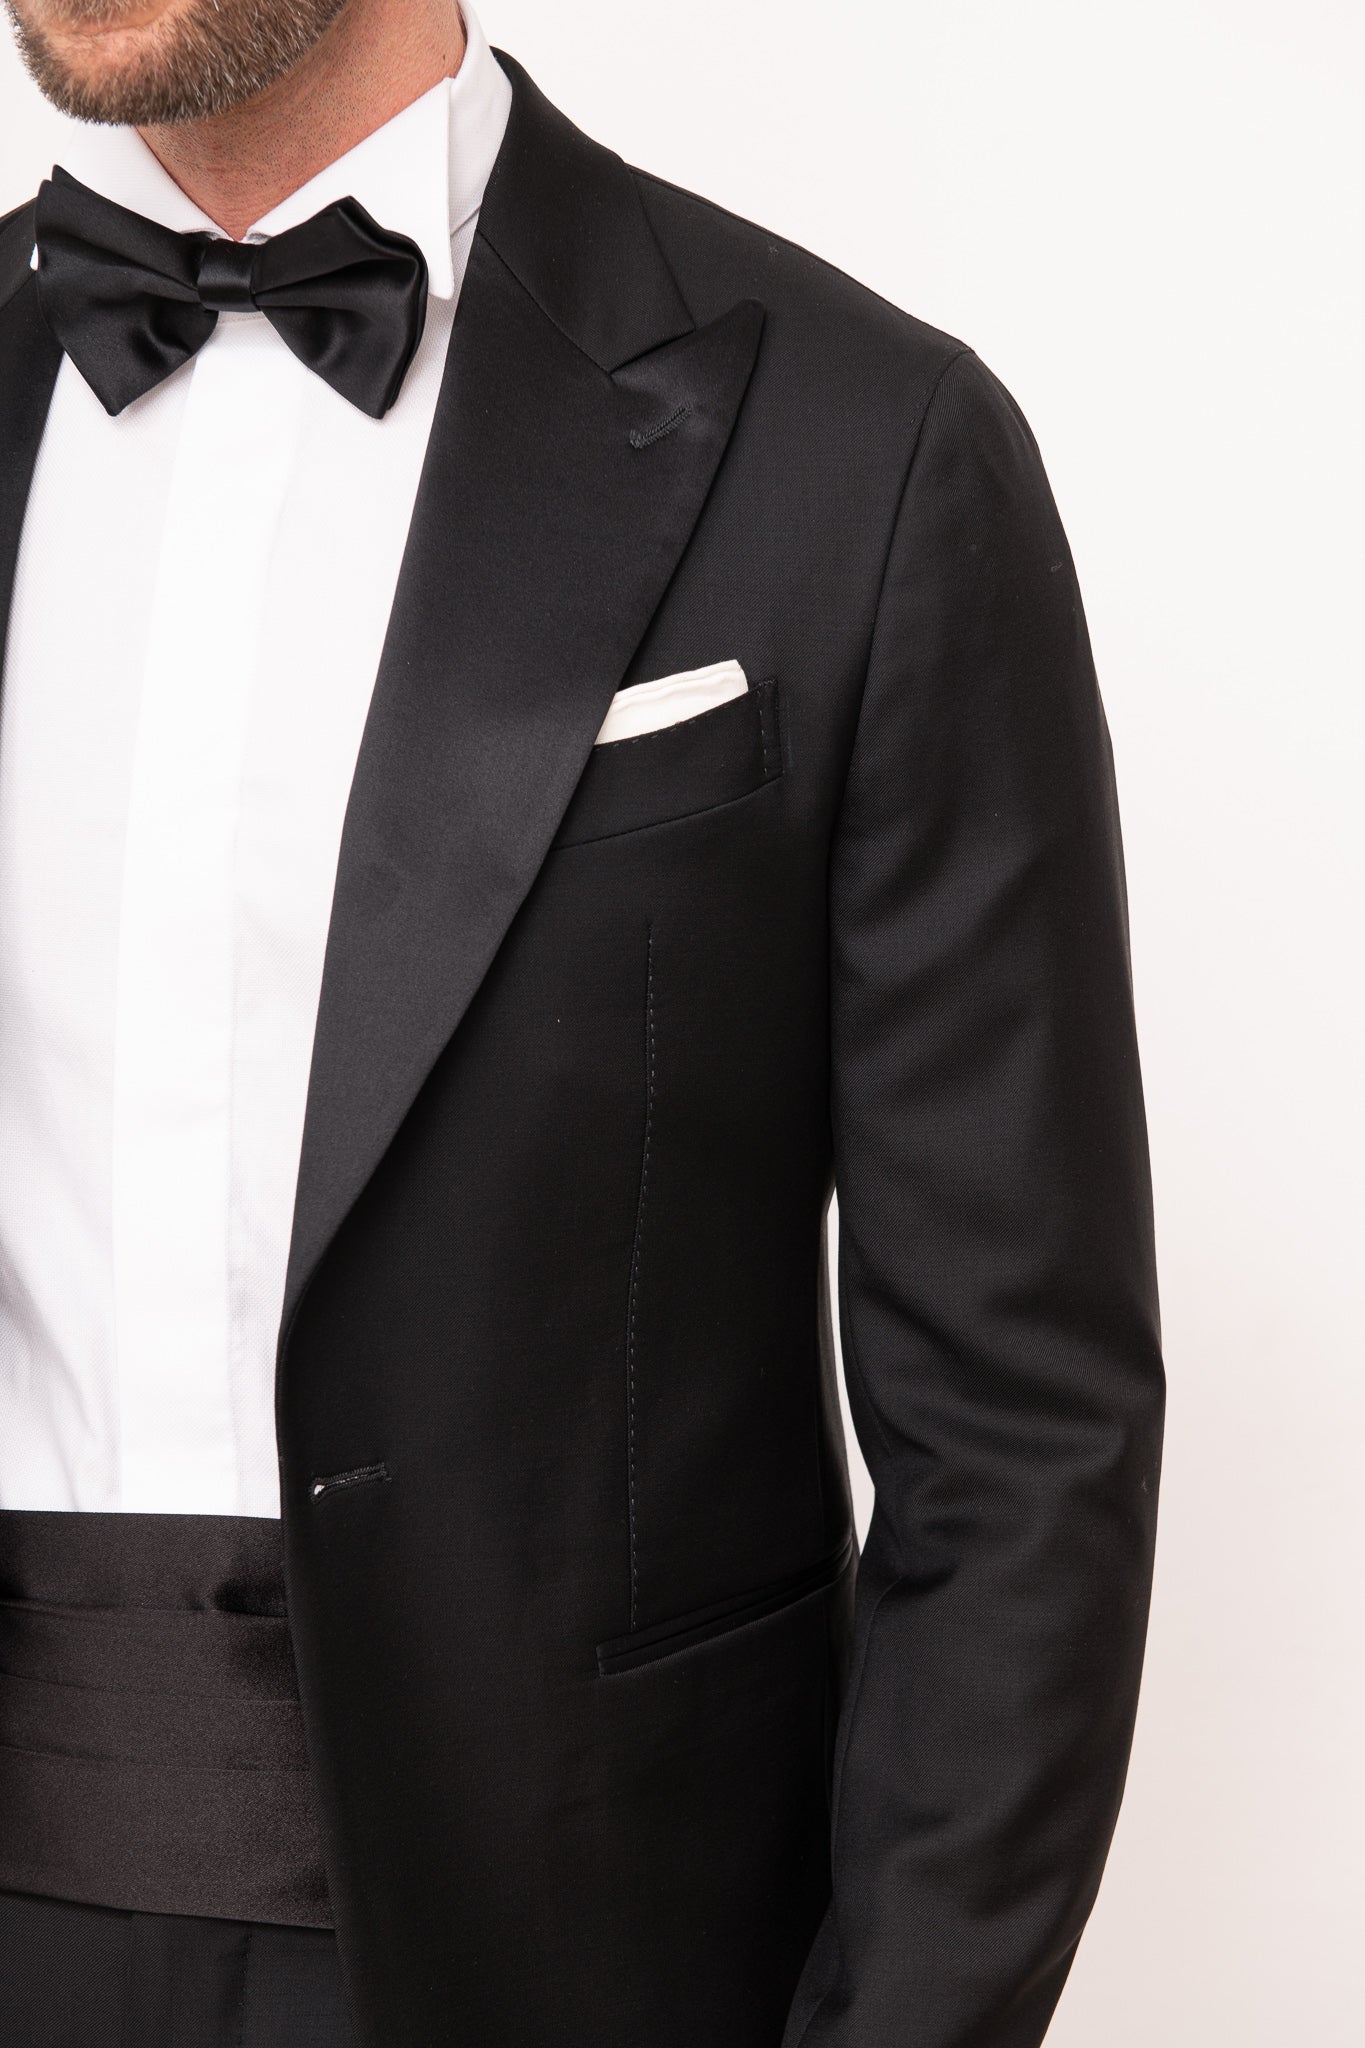 Black tuxedo - Made in Italy